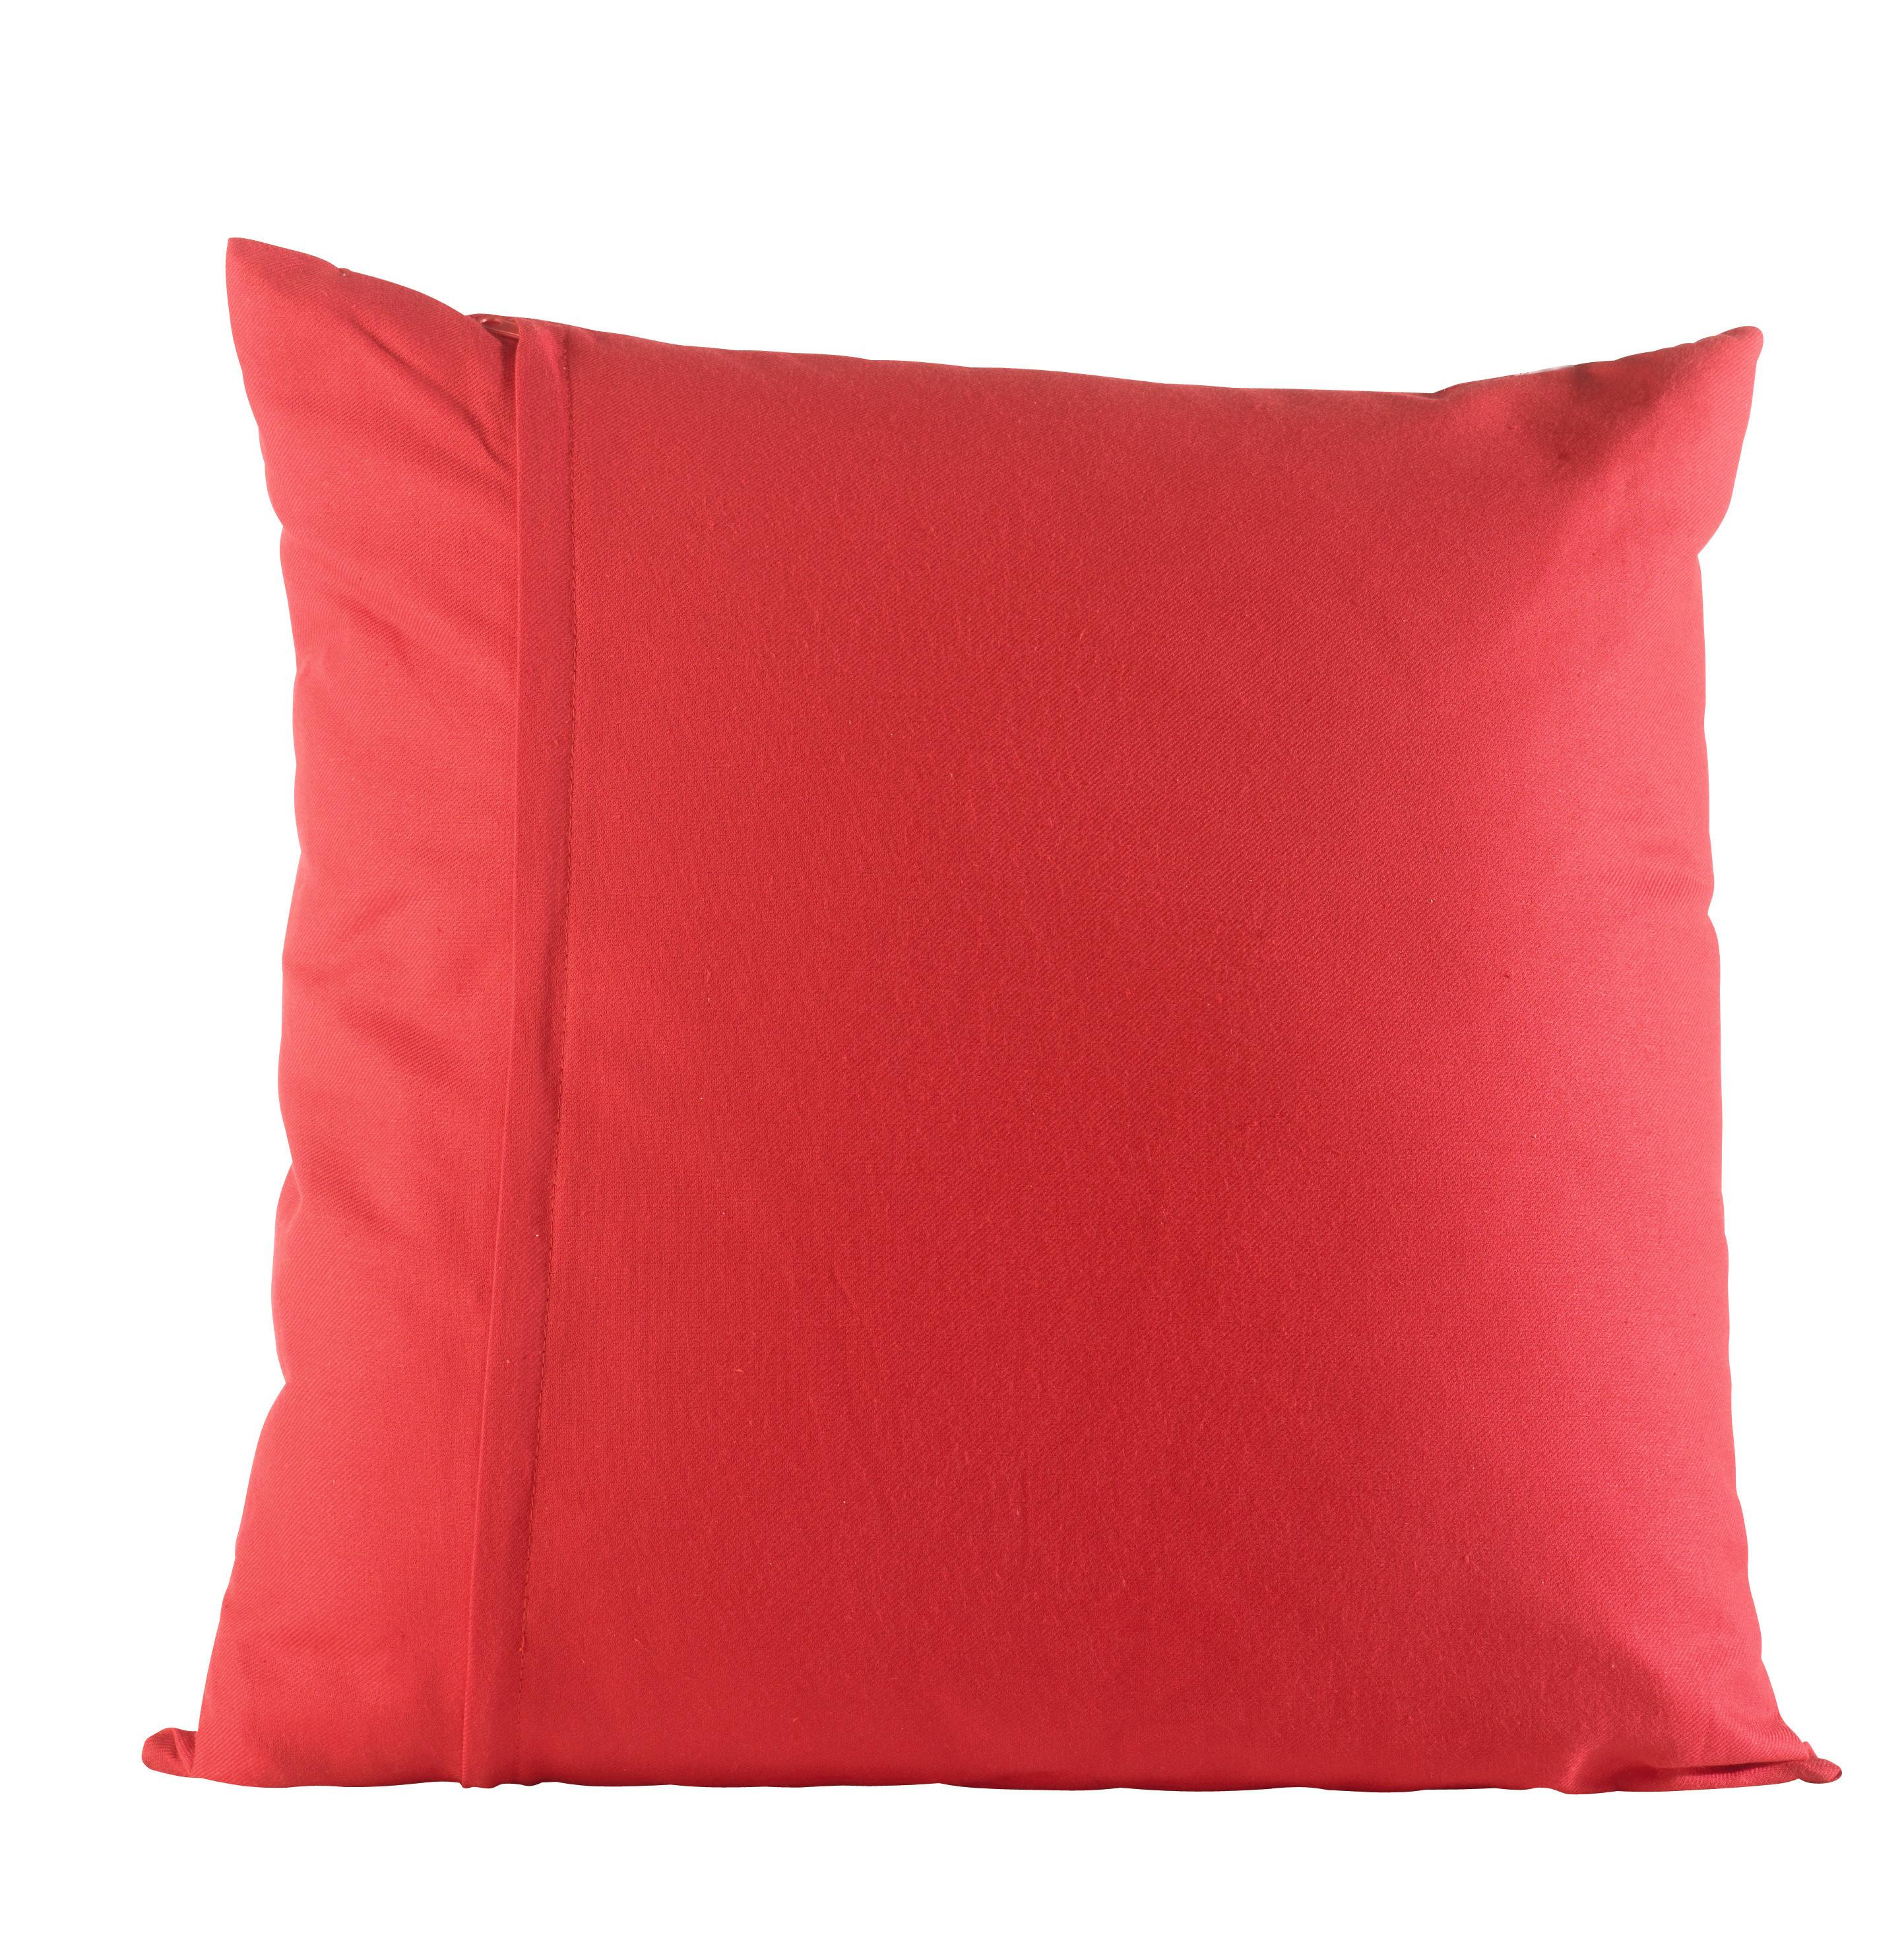 Polštář Ozdobný Zippmex, 50/50cm, Červená - červená, textil (50/50cm) - Modern Living